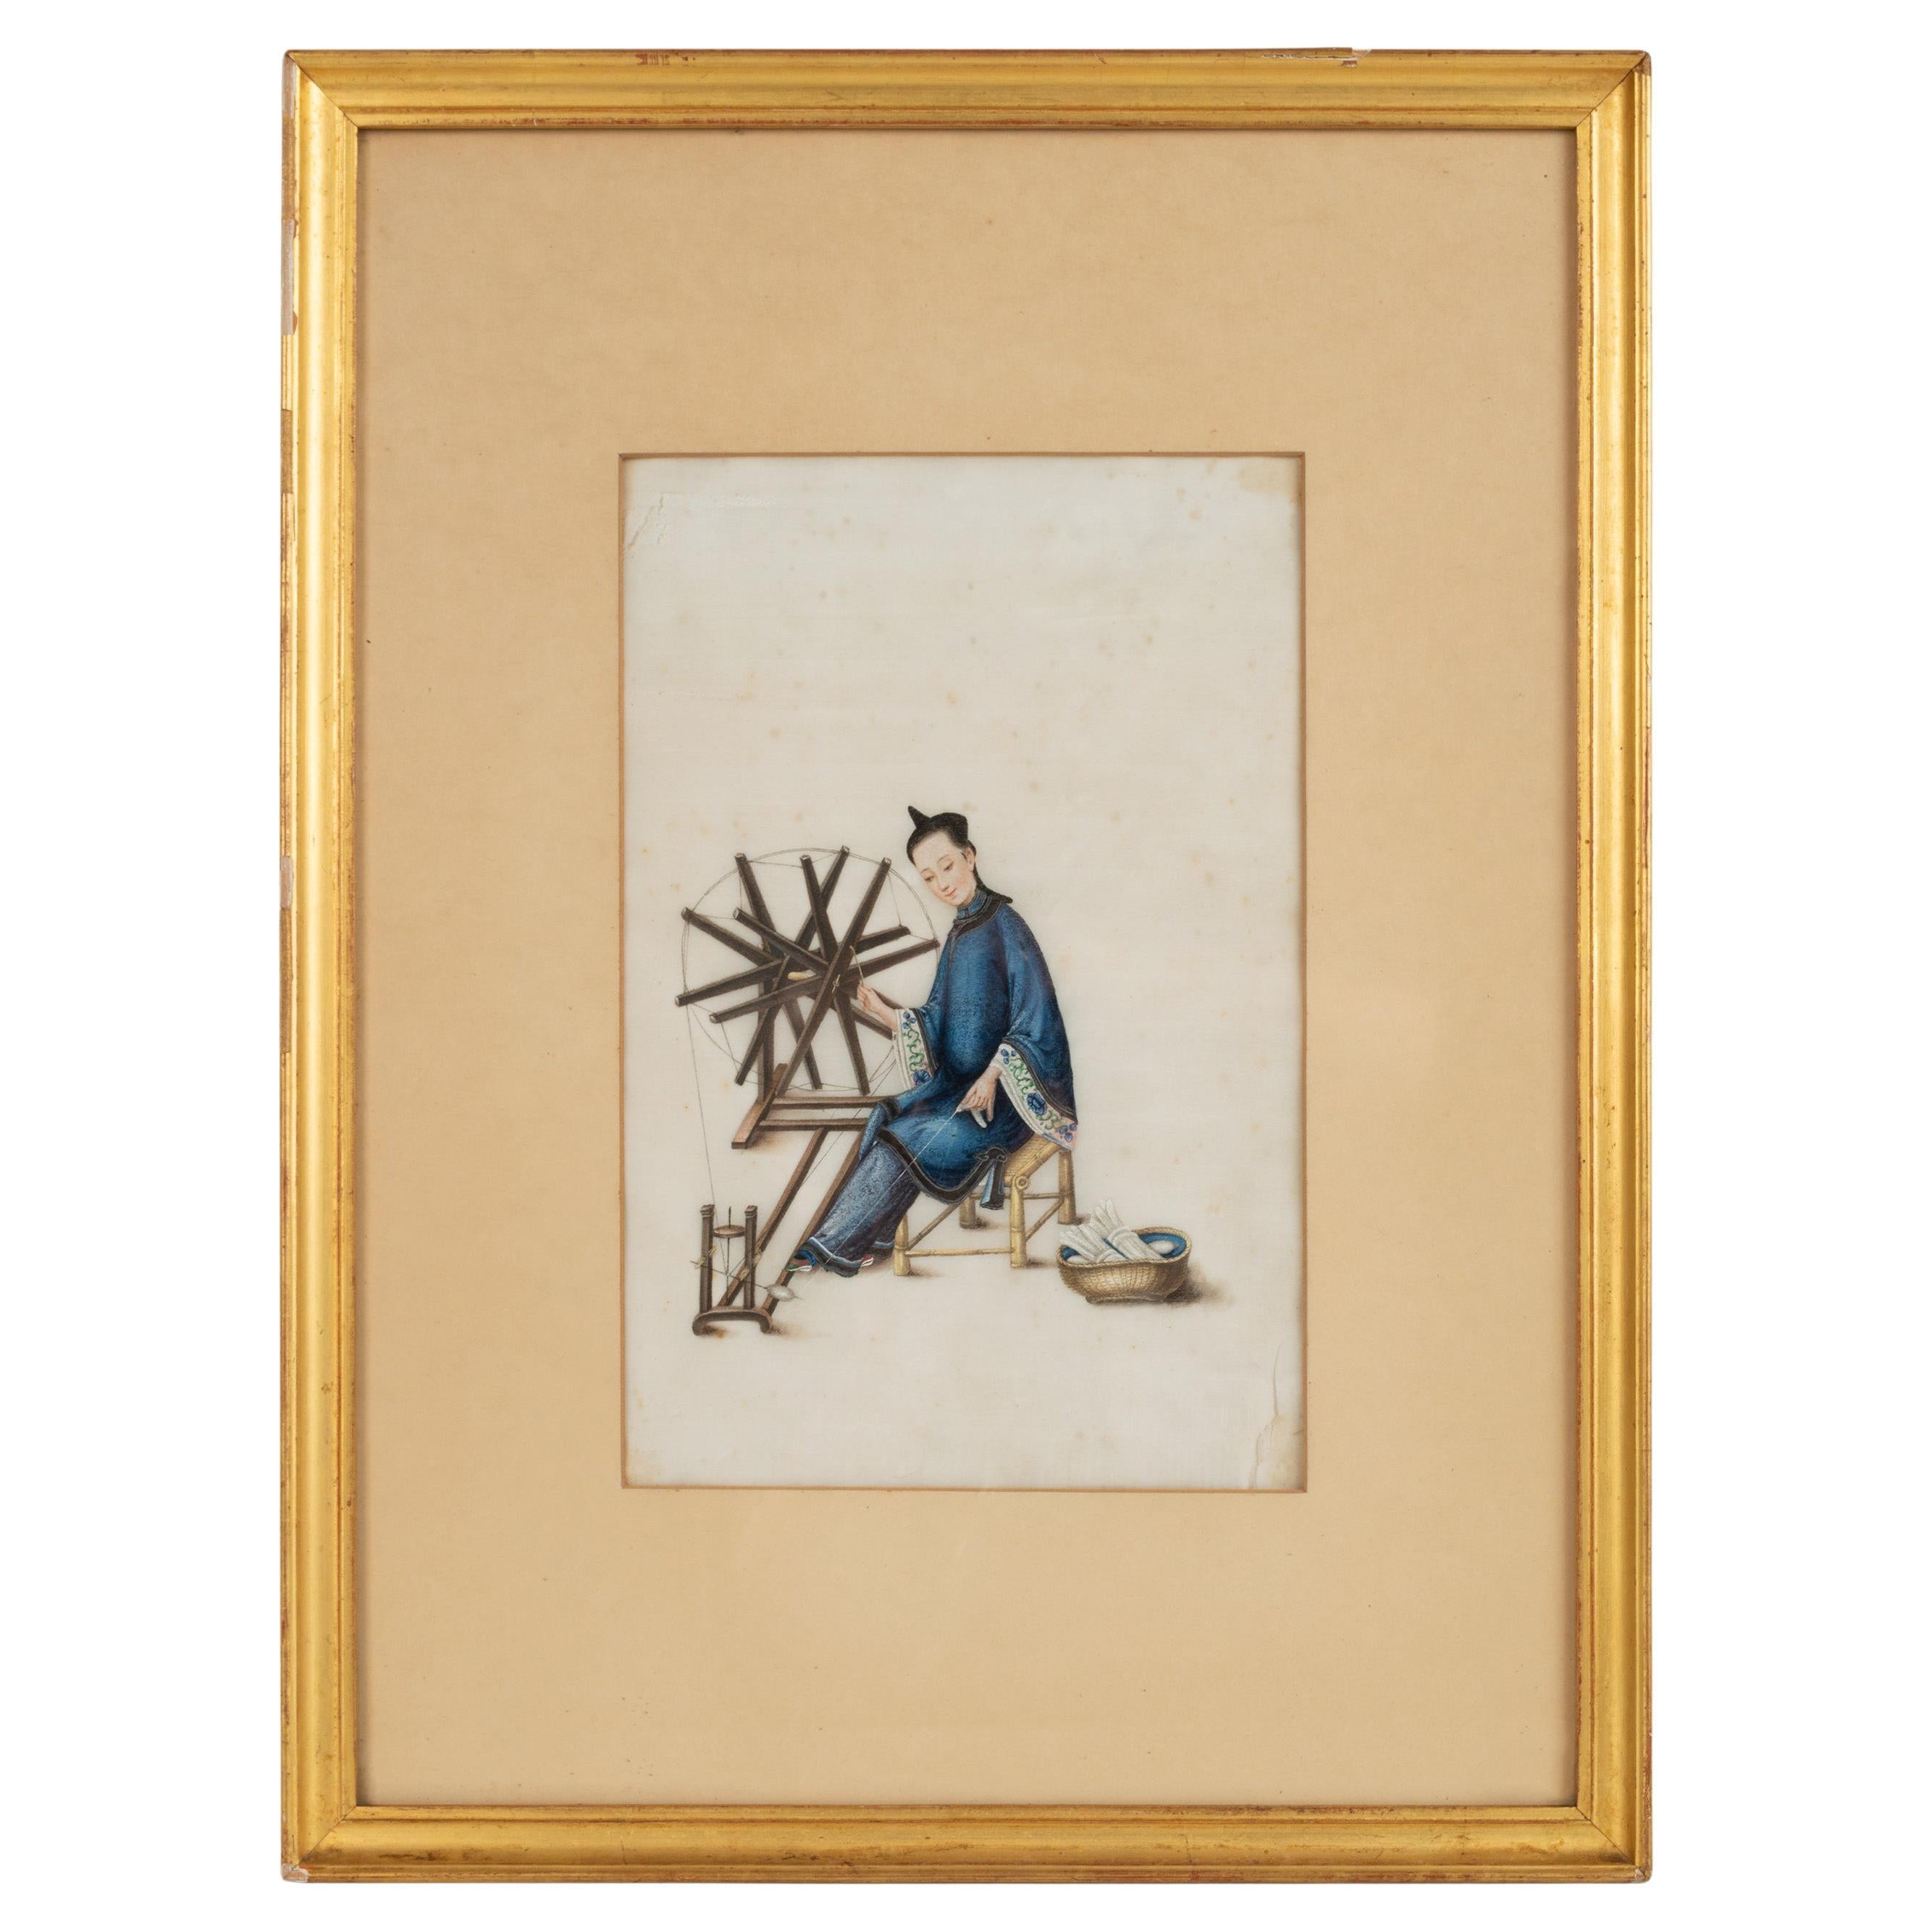 Aquarelle et gouache de la dynastie chinoise Qing sur papier Pith, Canton C.1835.

Capturant la vie à Canton, l'image d'une femme en train de tisser dépeint la vie quotidienne dans la Chine de la dynastie Qing. Ces peintures d'exportation étaient